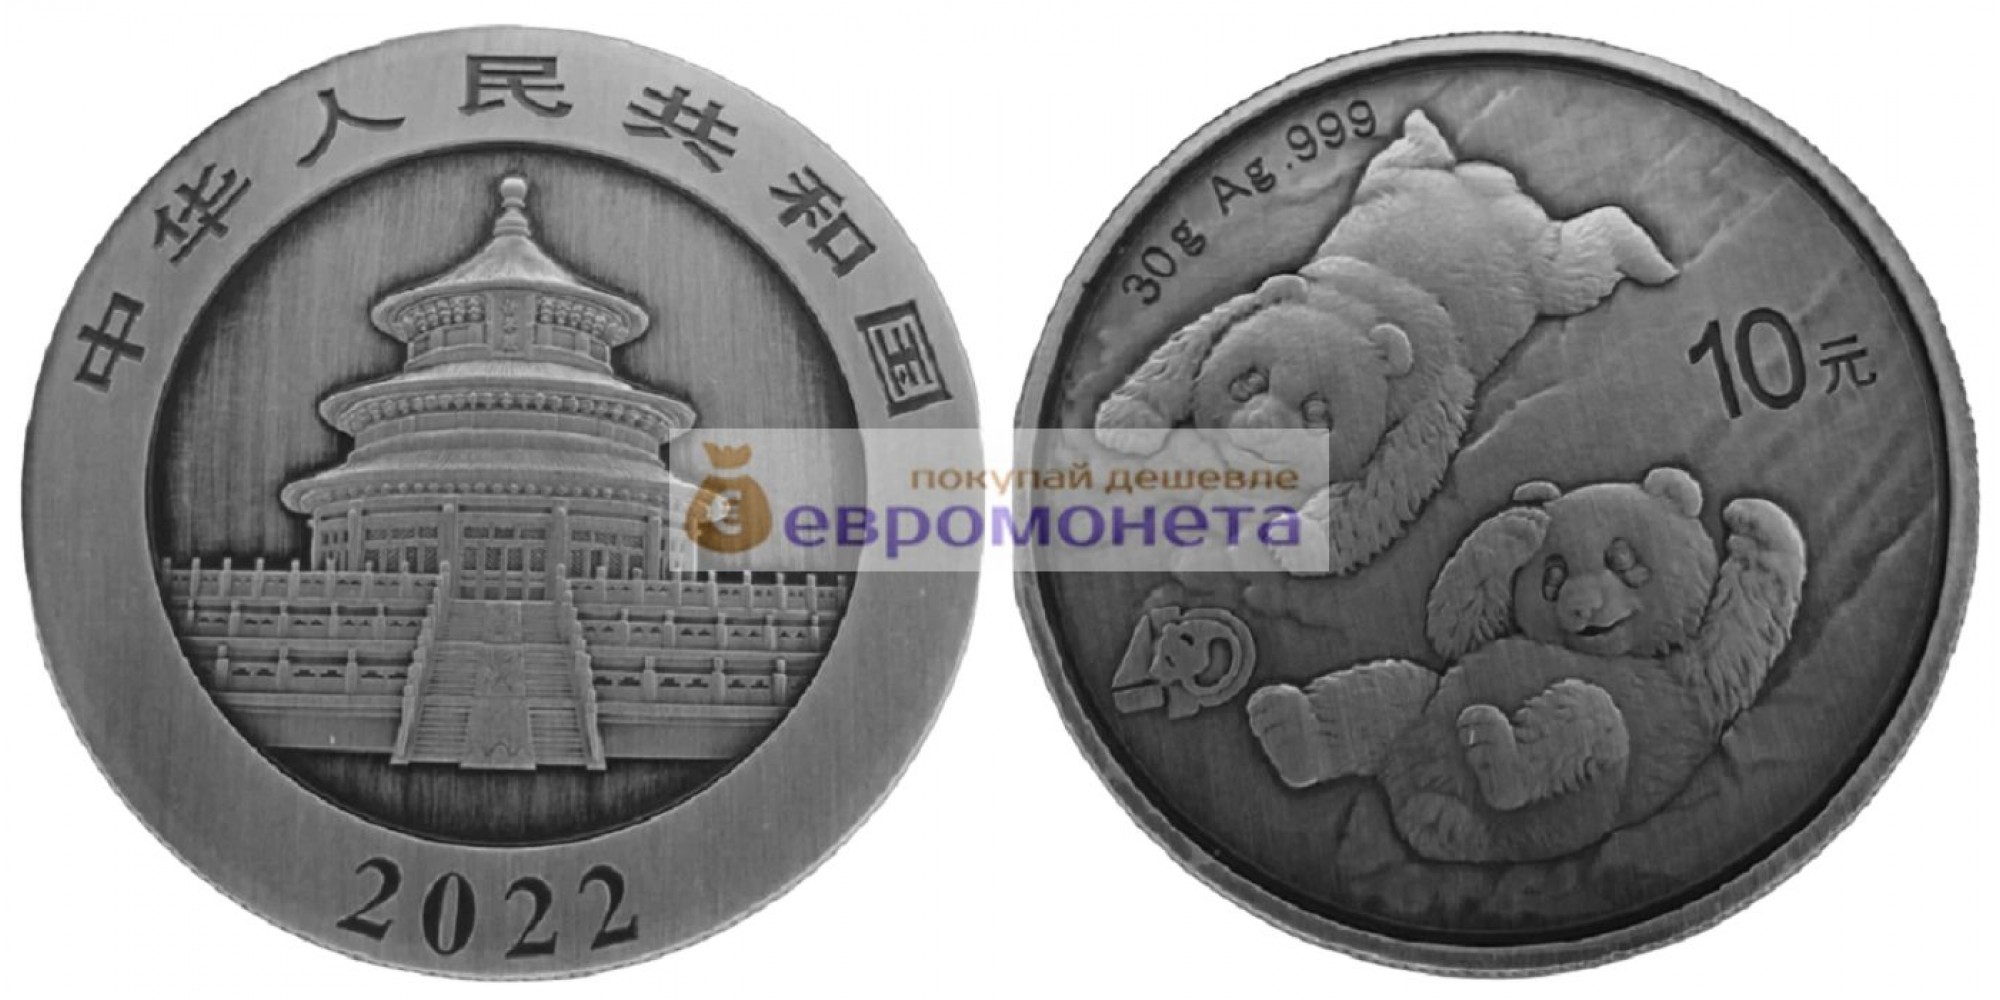 Народная Республика Китай 10 юань 2022 год 40 лет чеканке монет с пандой. Серебро. 30 грамм 999 пробы (Антиквариат)